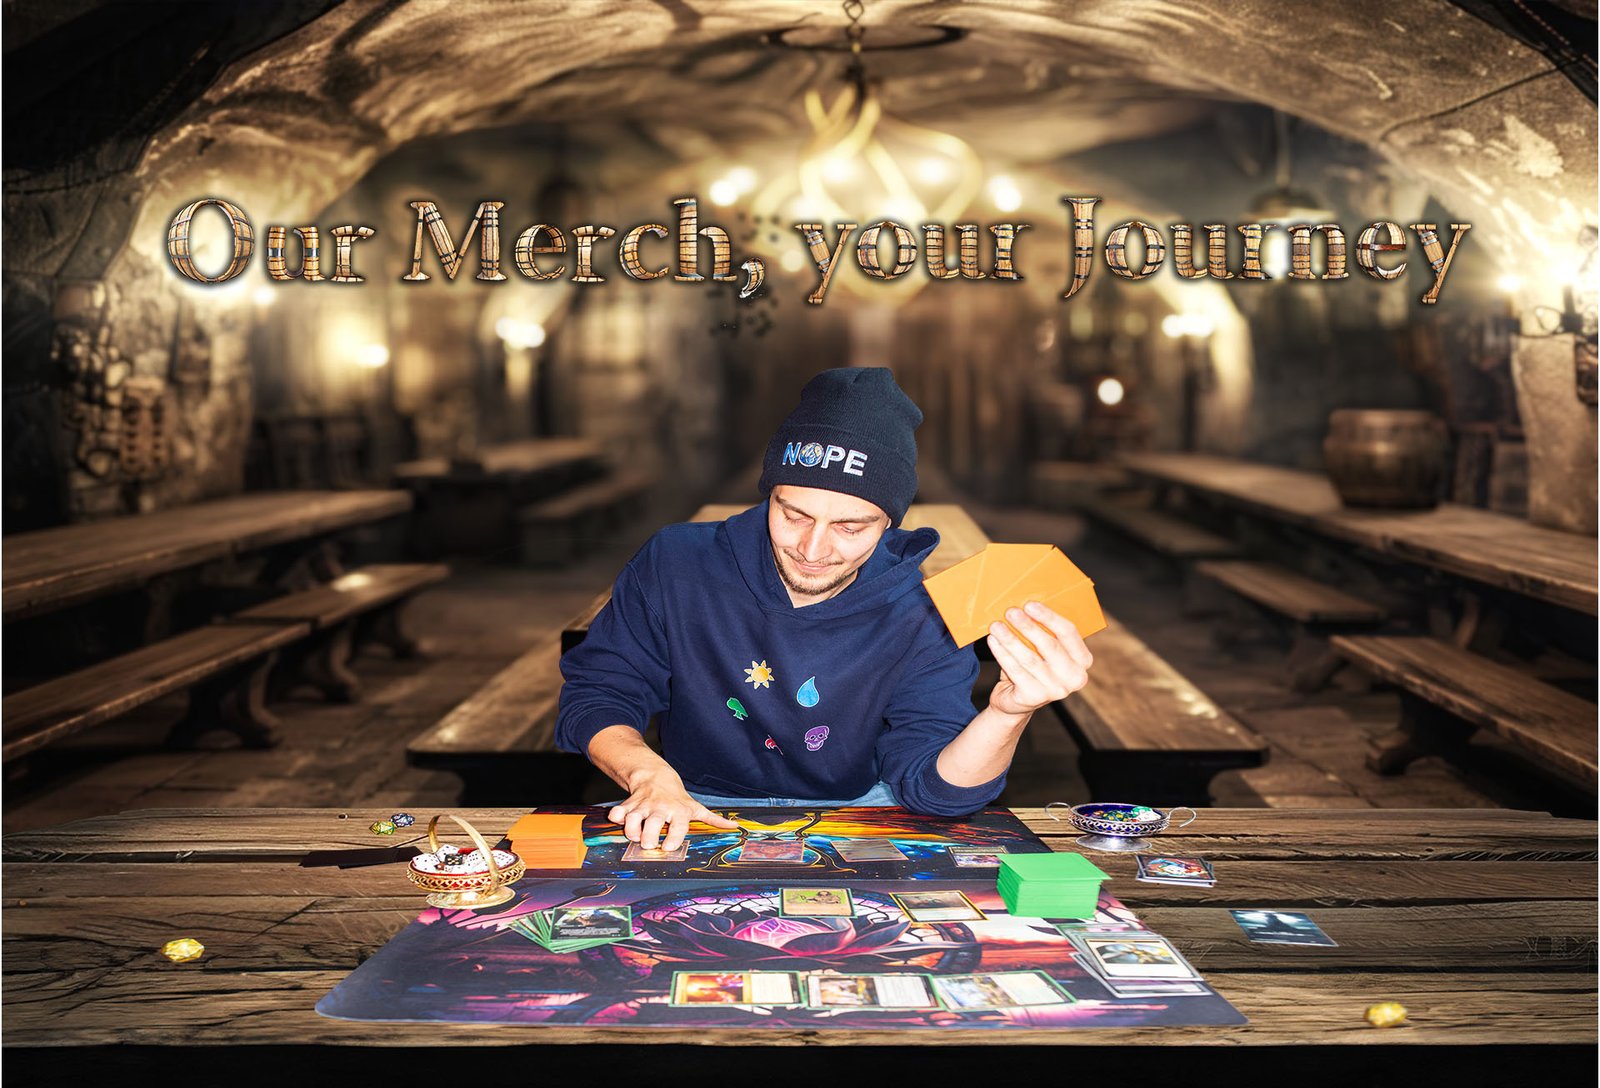 Branding-Foto einer Spielefirma, ein Mann sitzt an einem Tisch und hält Karten, im Hintergrund der Text 'Our Merch, your Journey' in einem rustikalen Gasthaus.